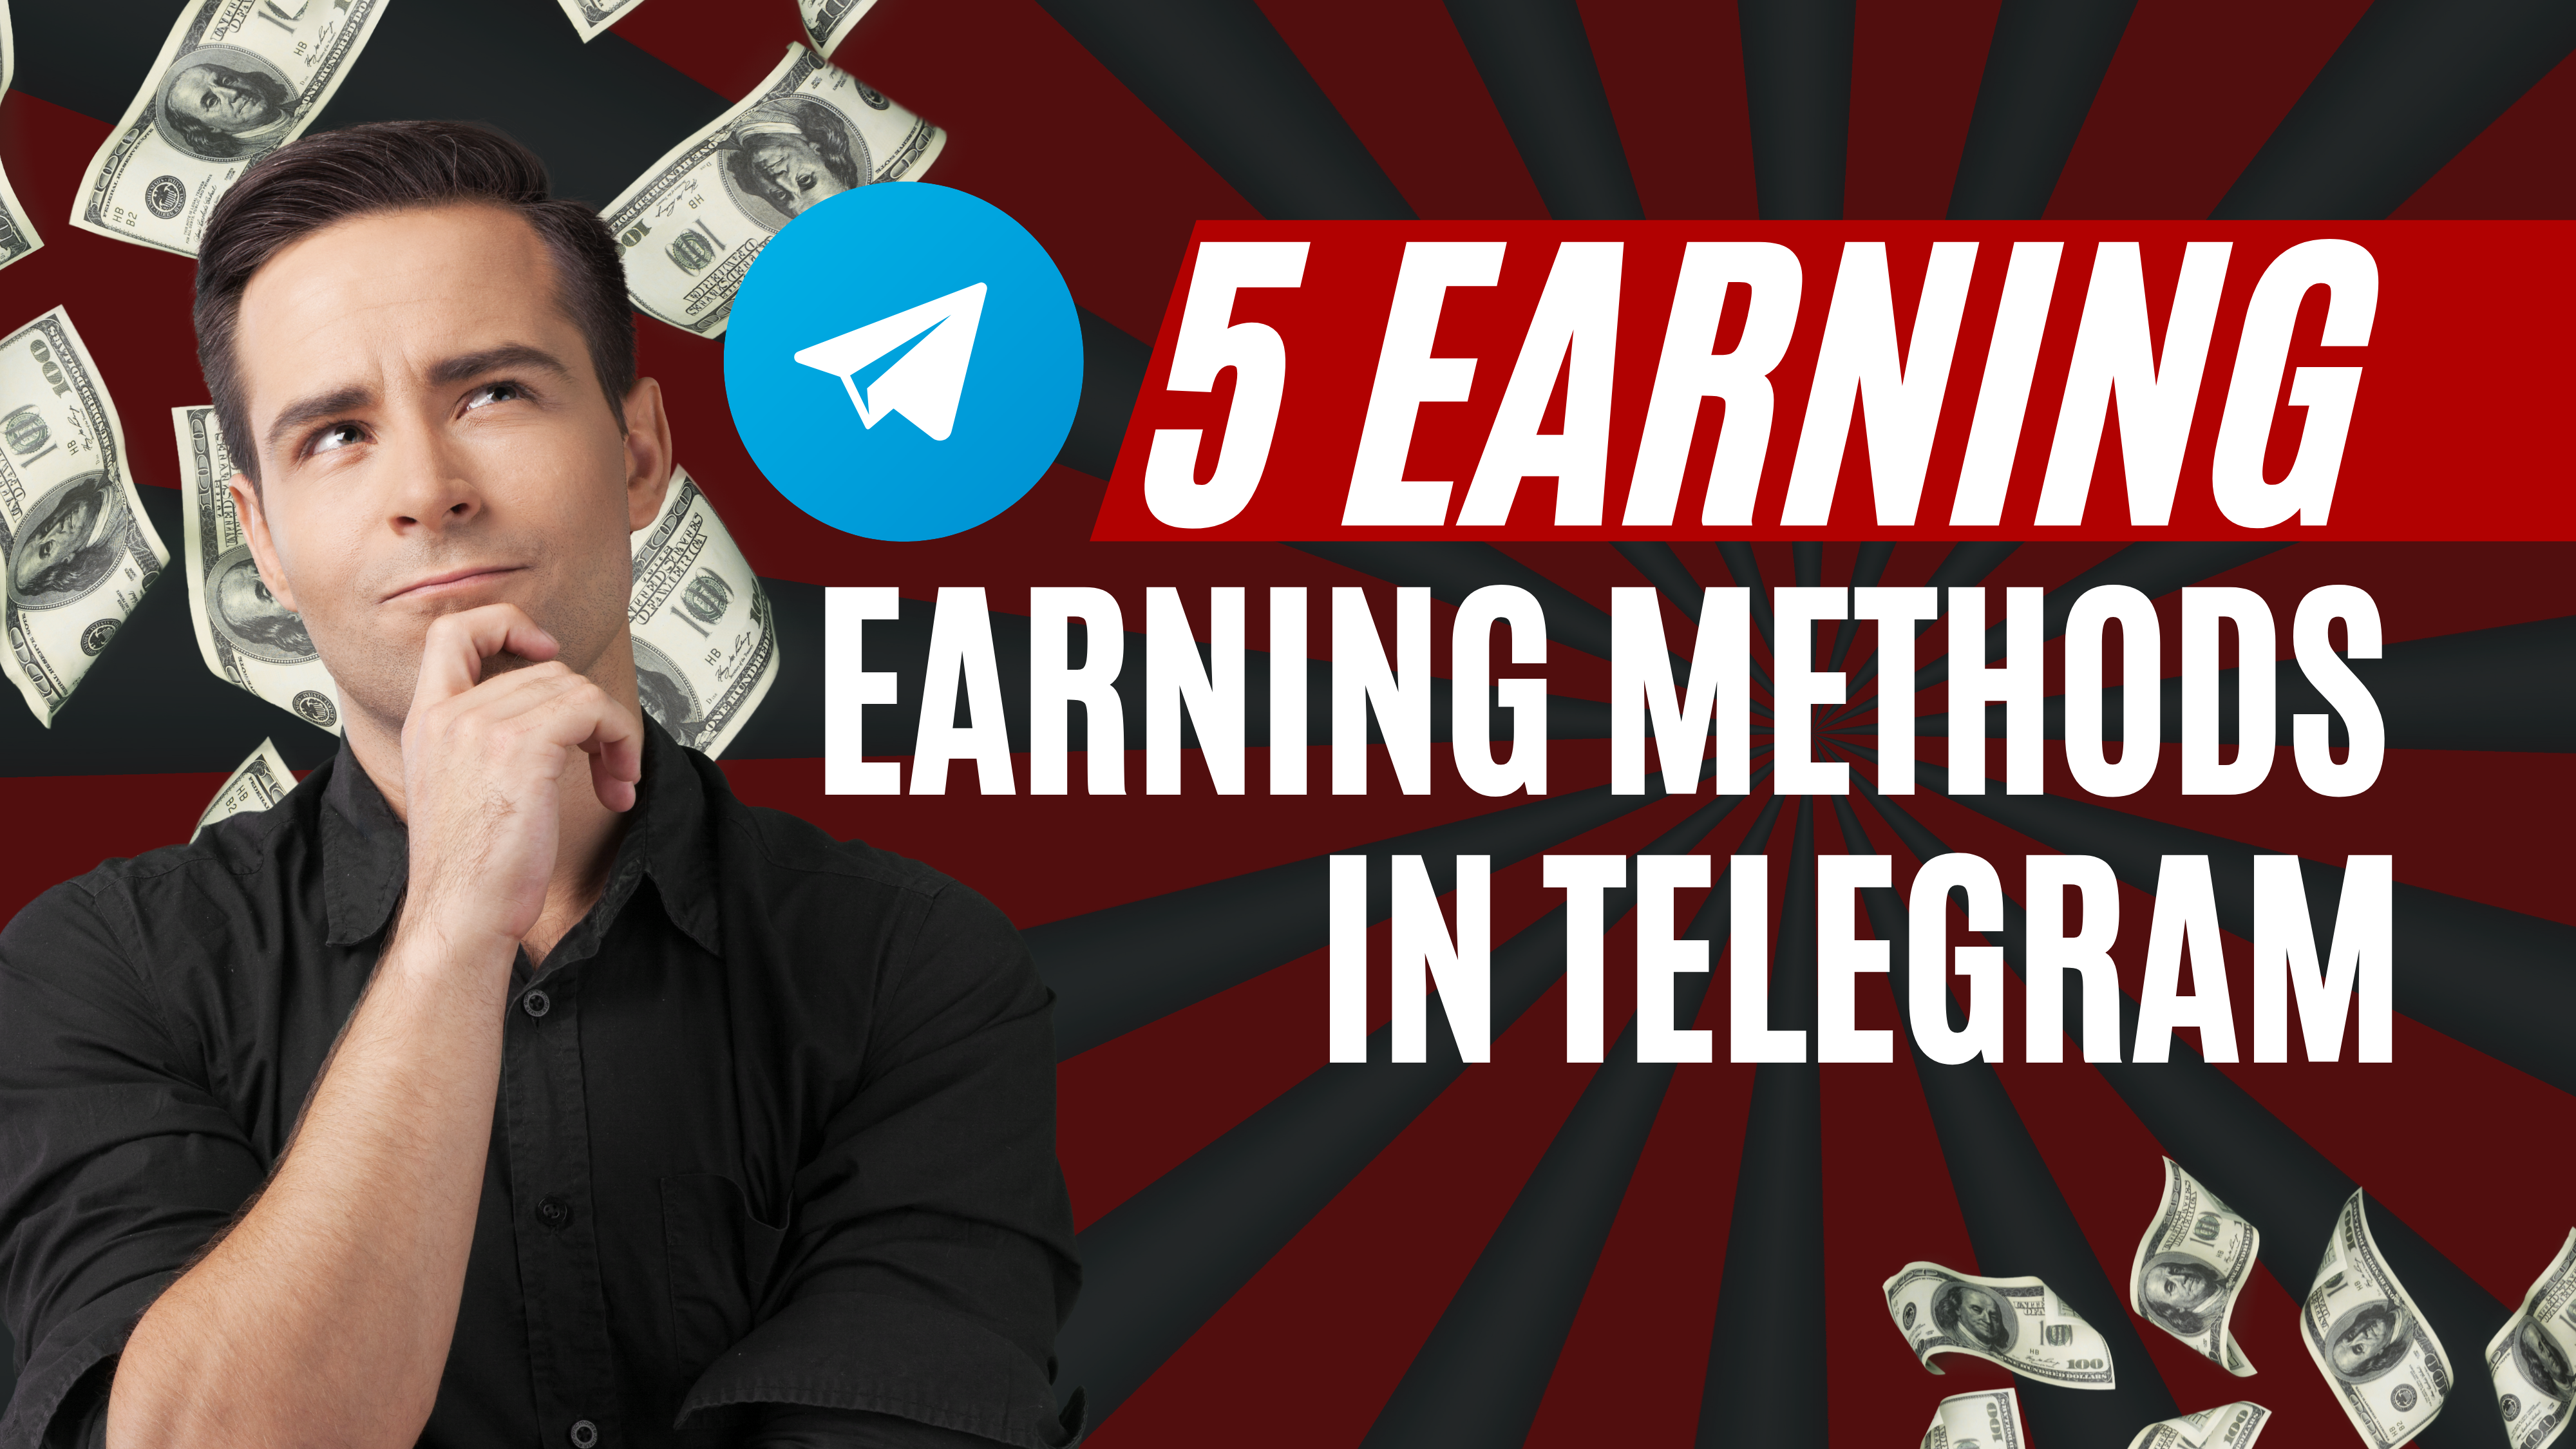 Earning methods in telegram